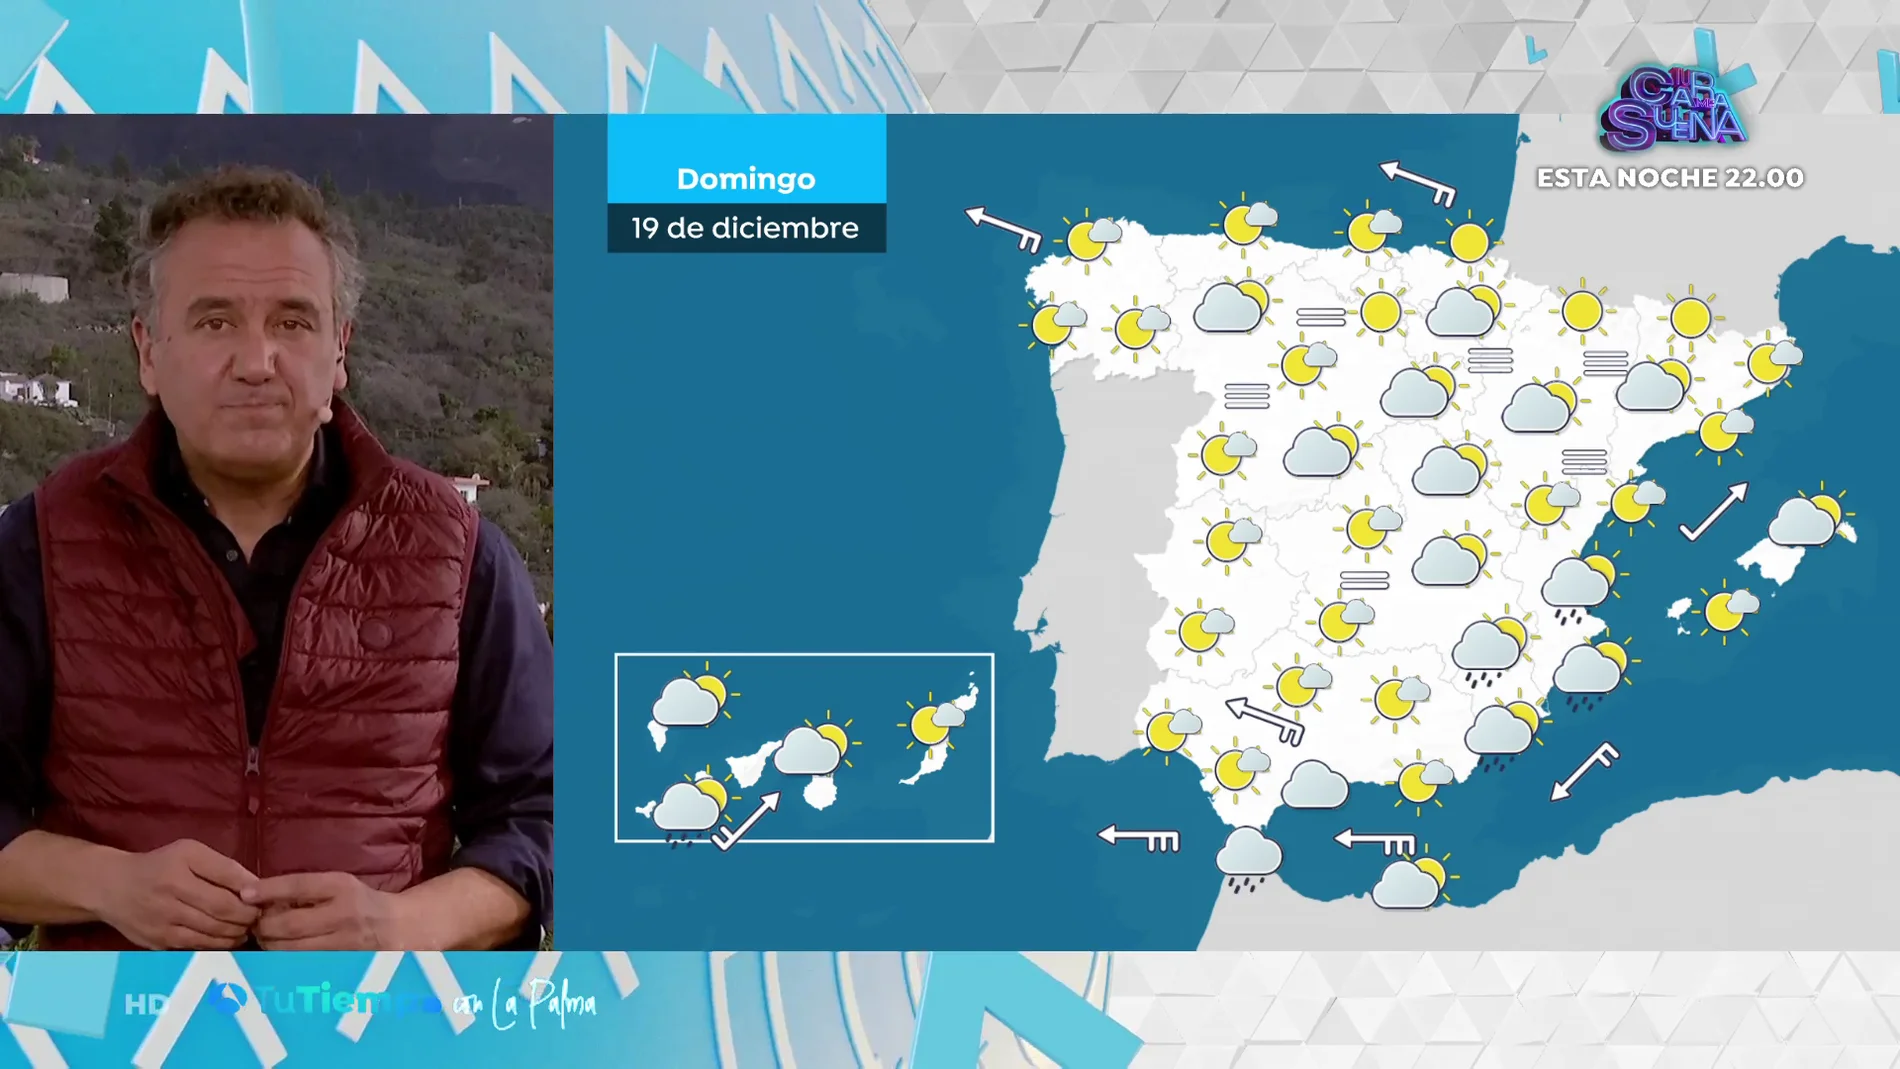 Jornada de tiempo estable y cielos despejados con lluvias débiles en Valencia, Alicante, región de Murcia, Cádiz y Ceuta